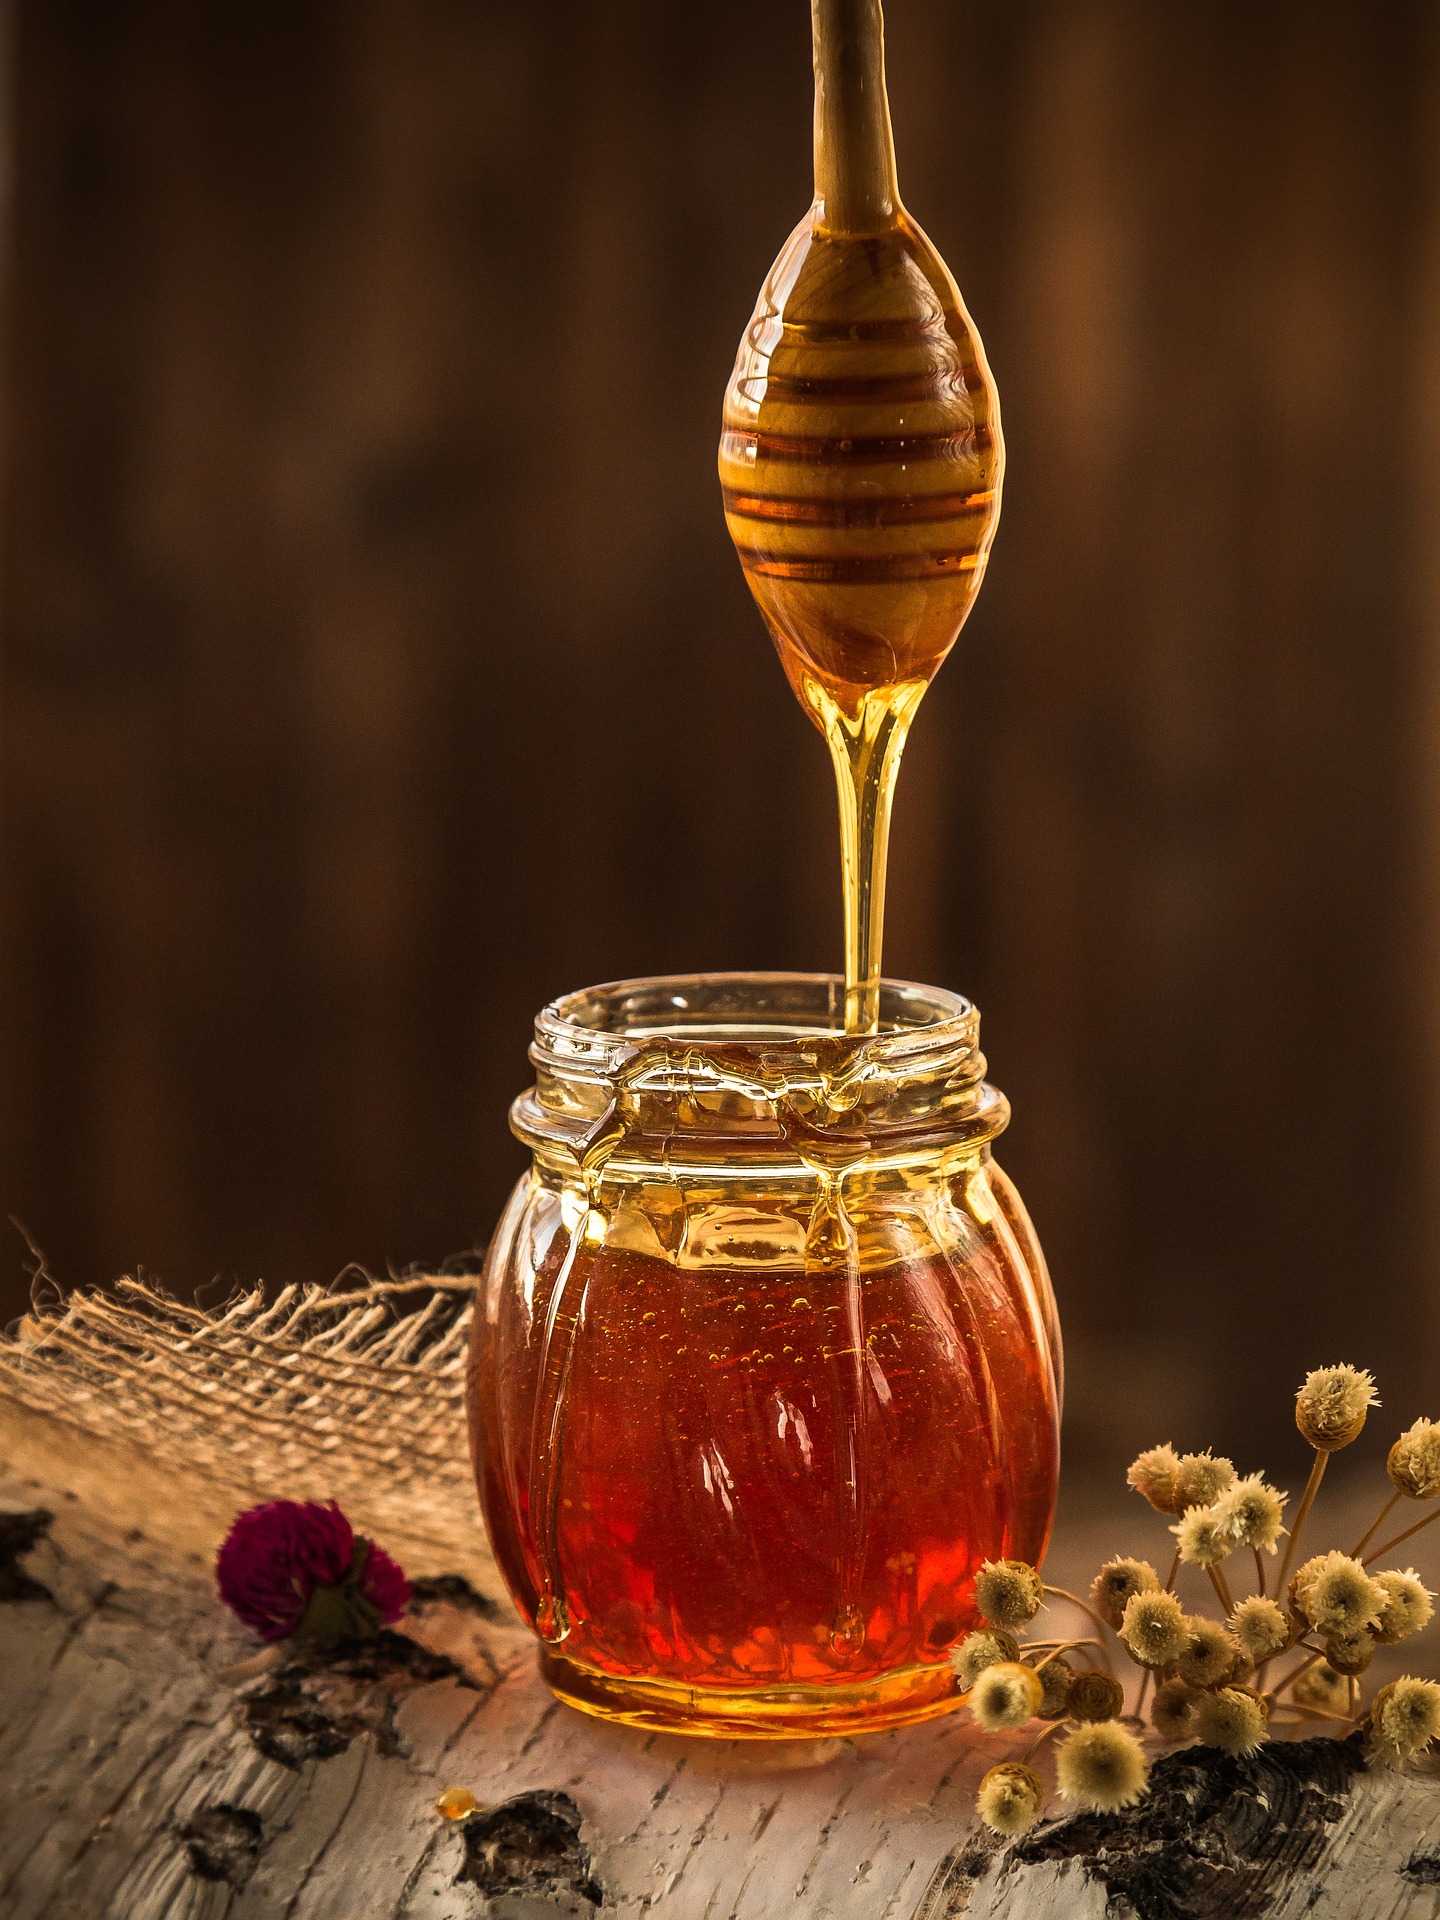 마누카 Manuka 꿀의 5가지 효능